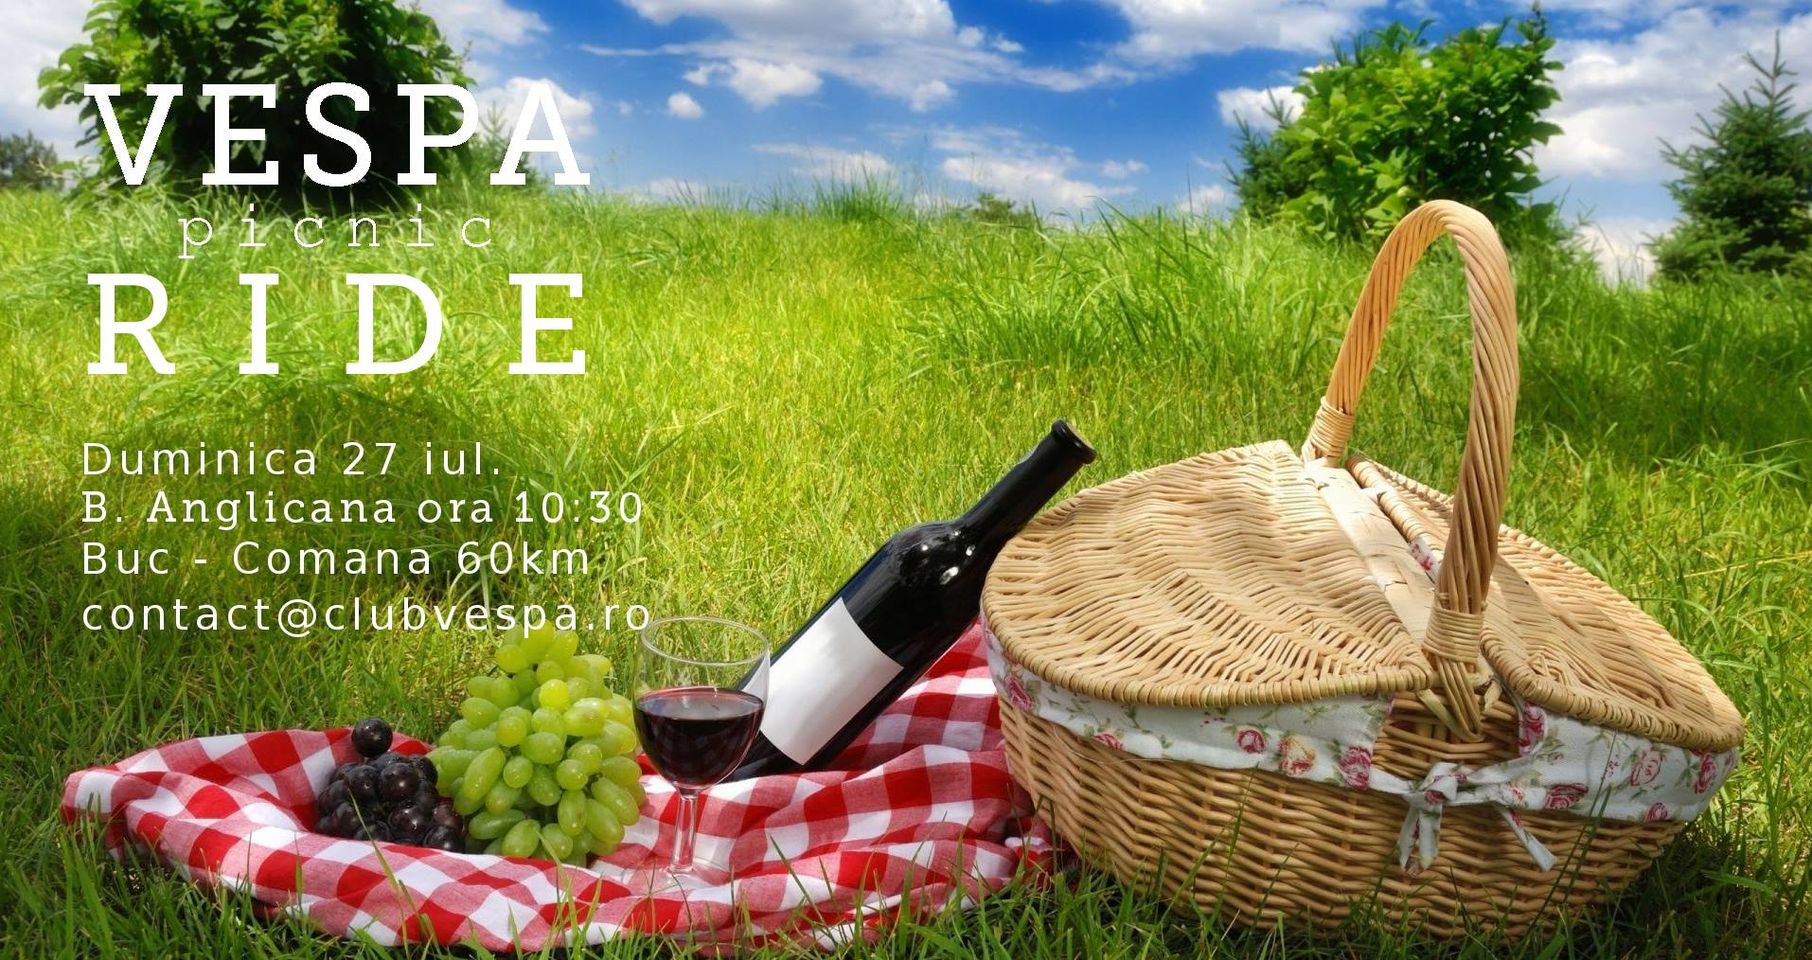 Vespa picnic Ride